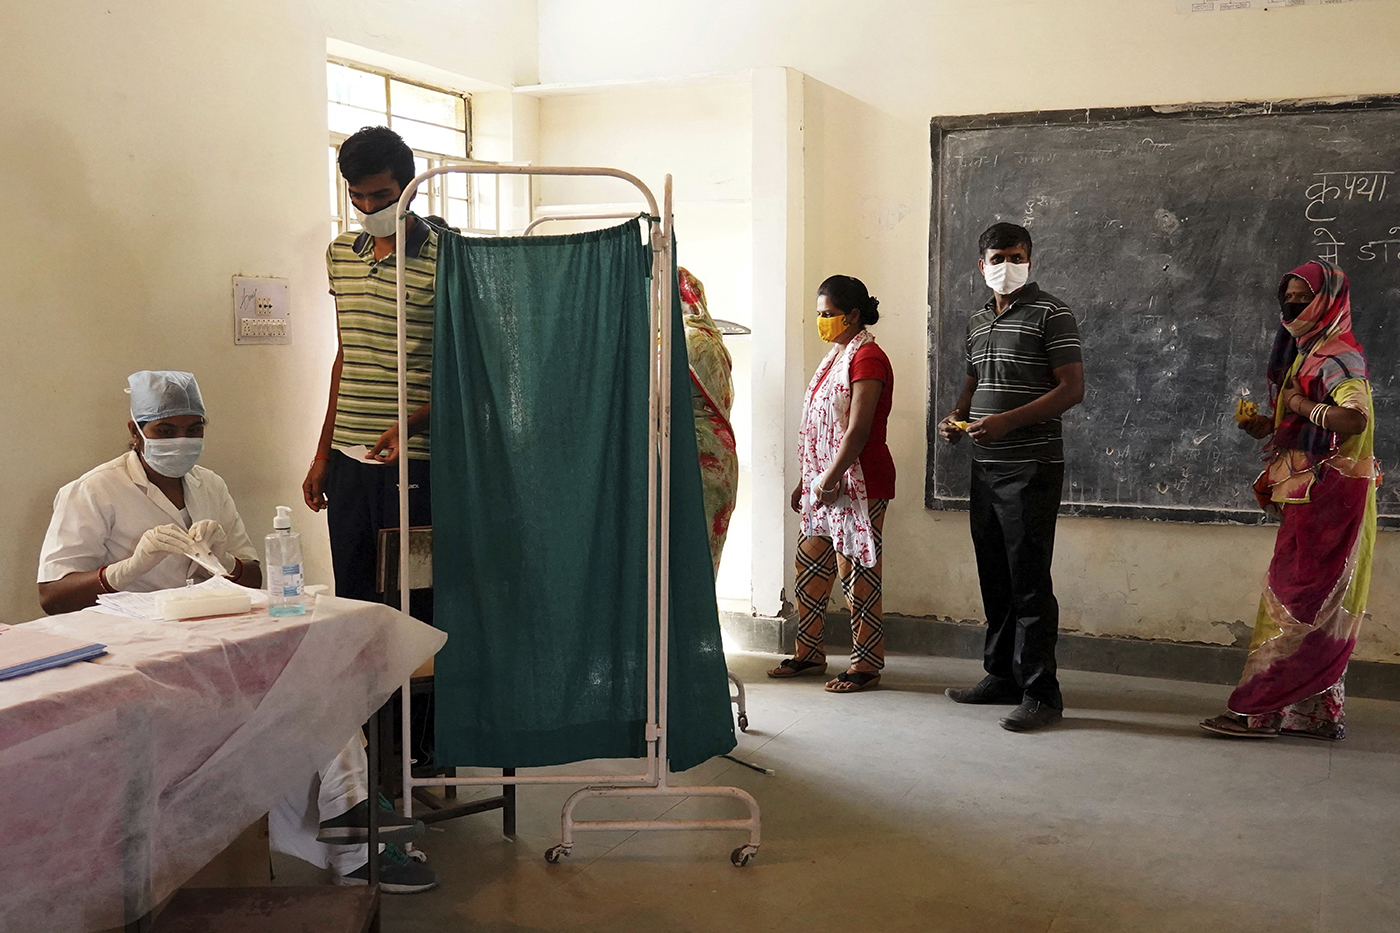 hospital scene in India